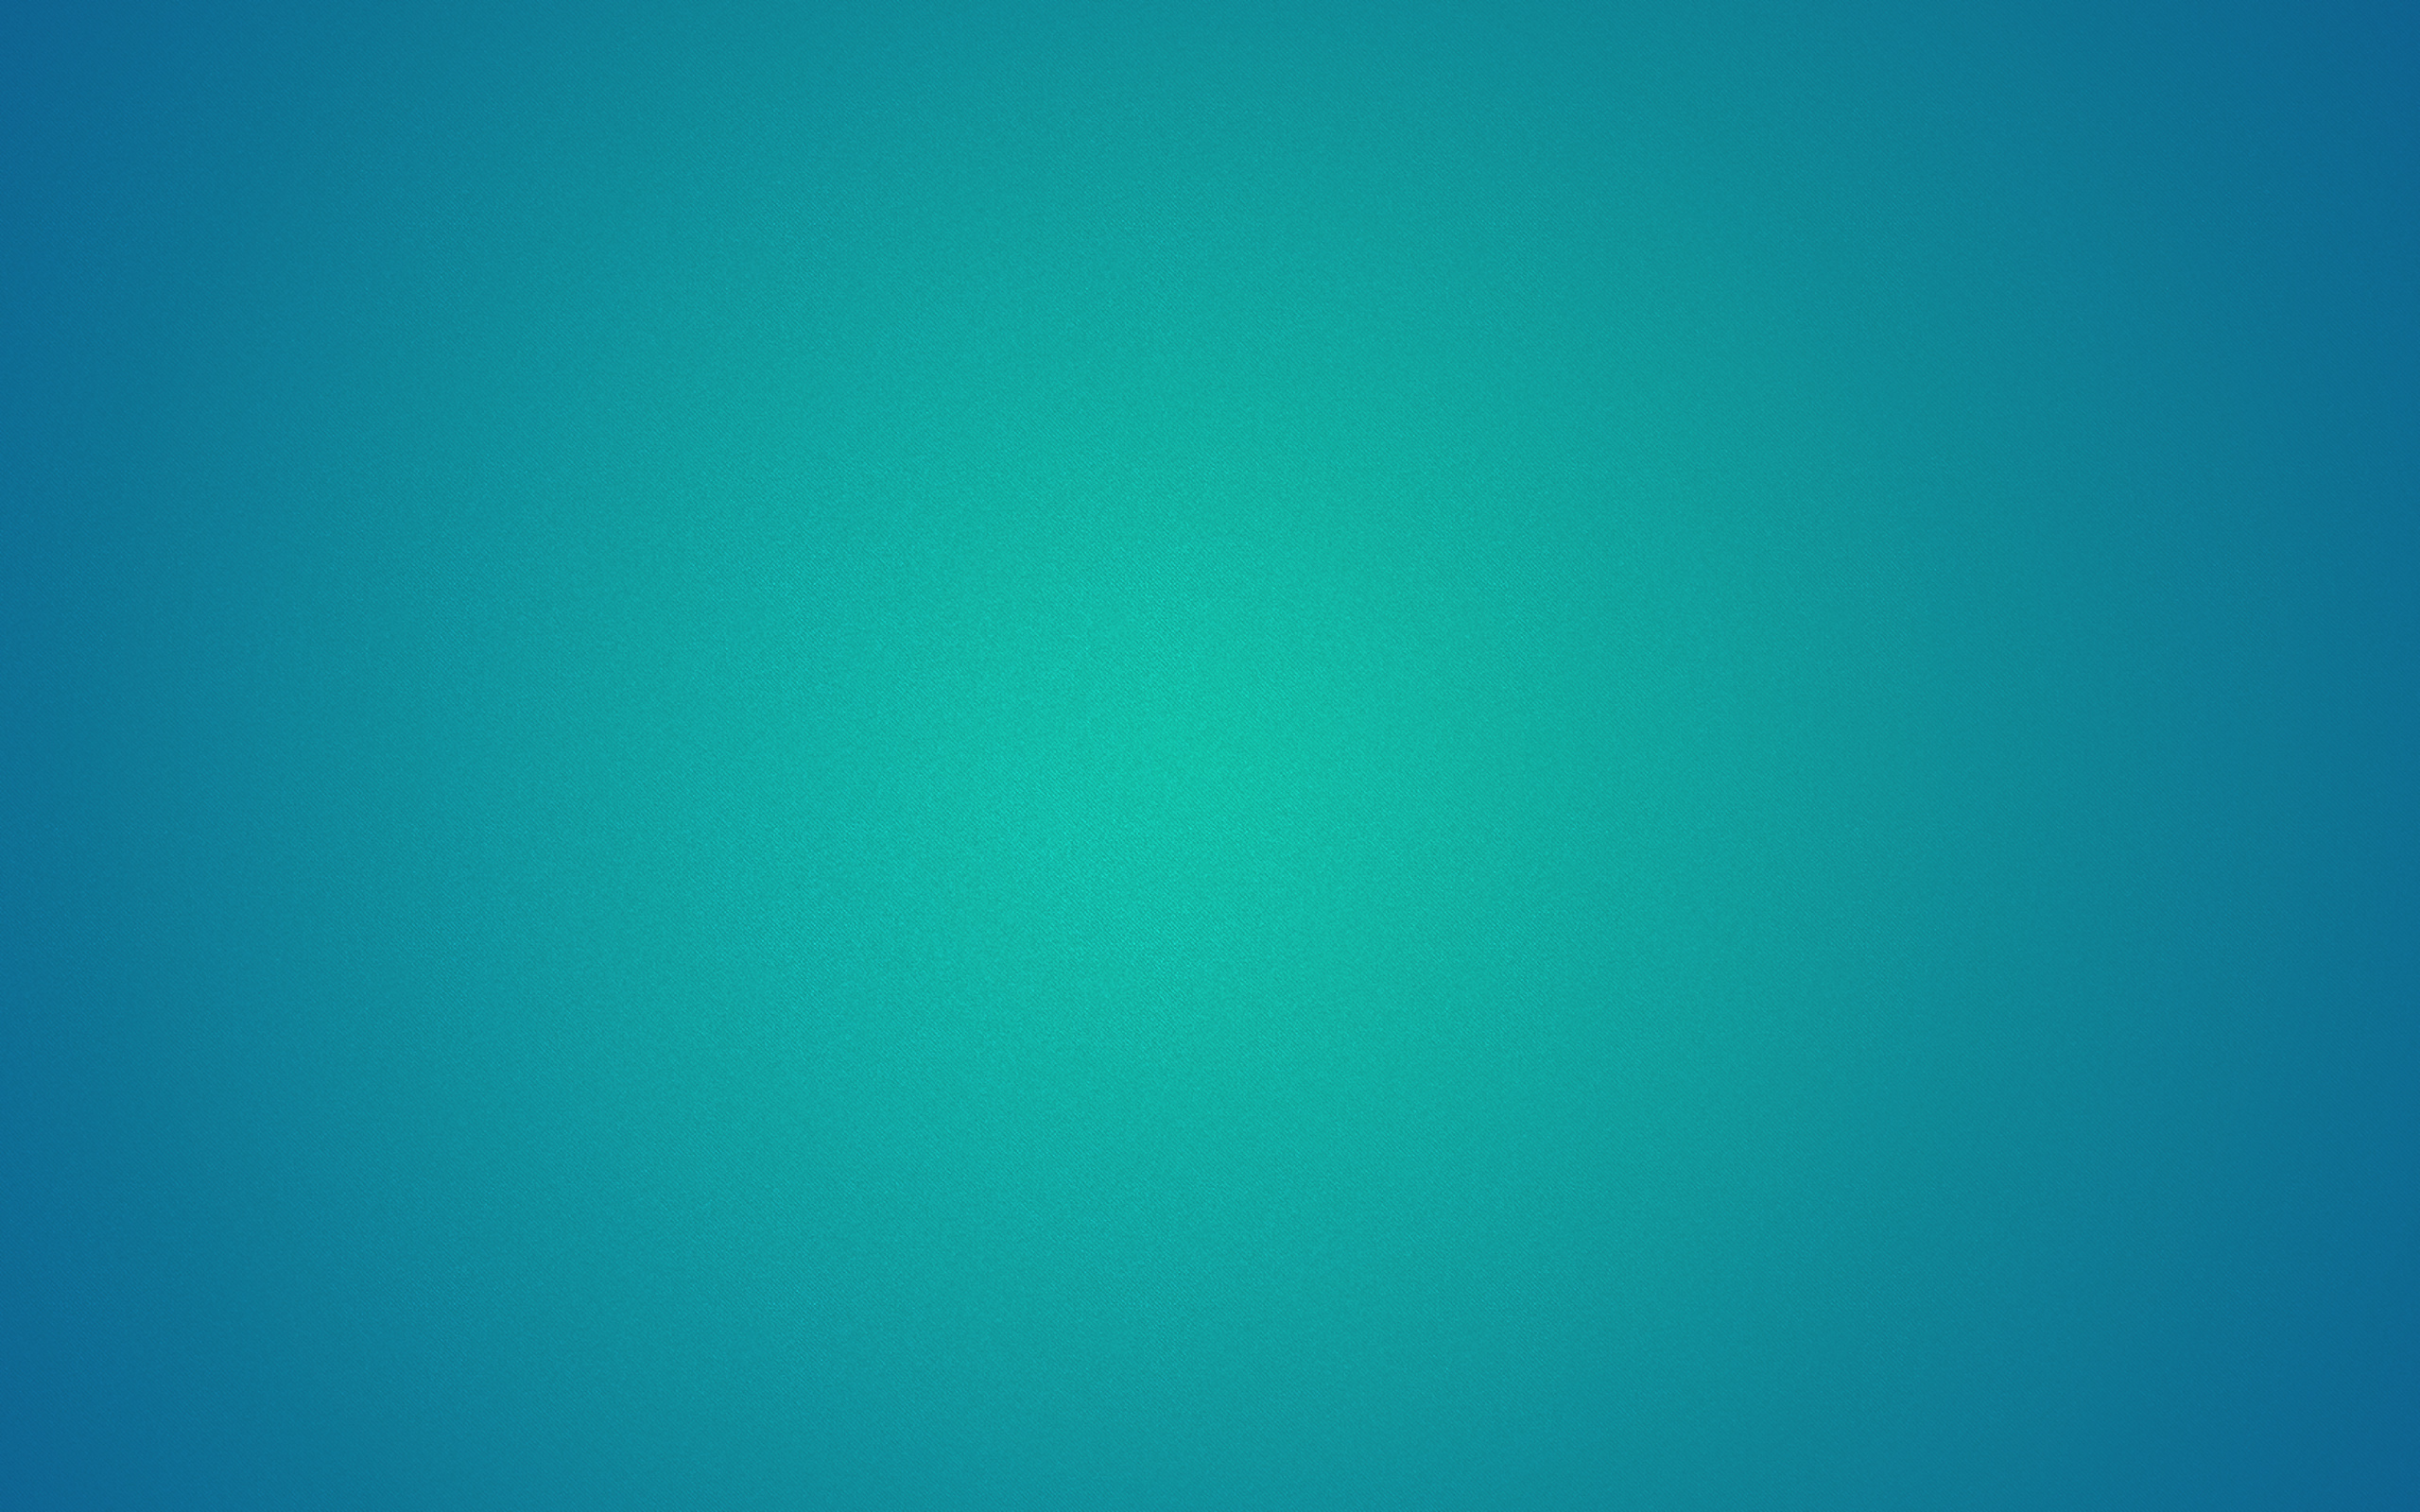 ubuntu gnome壁紙,青い,緑,アクア,ターコイズ,ティール